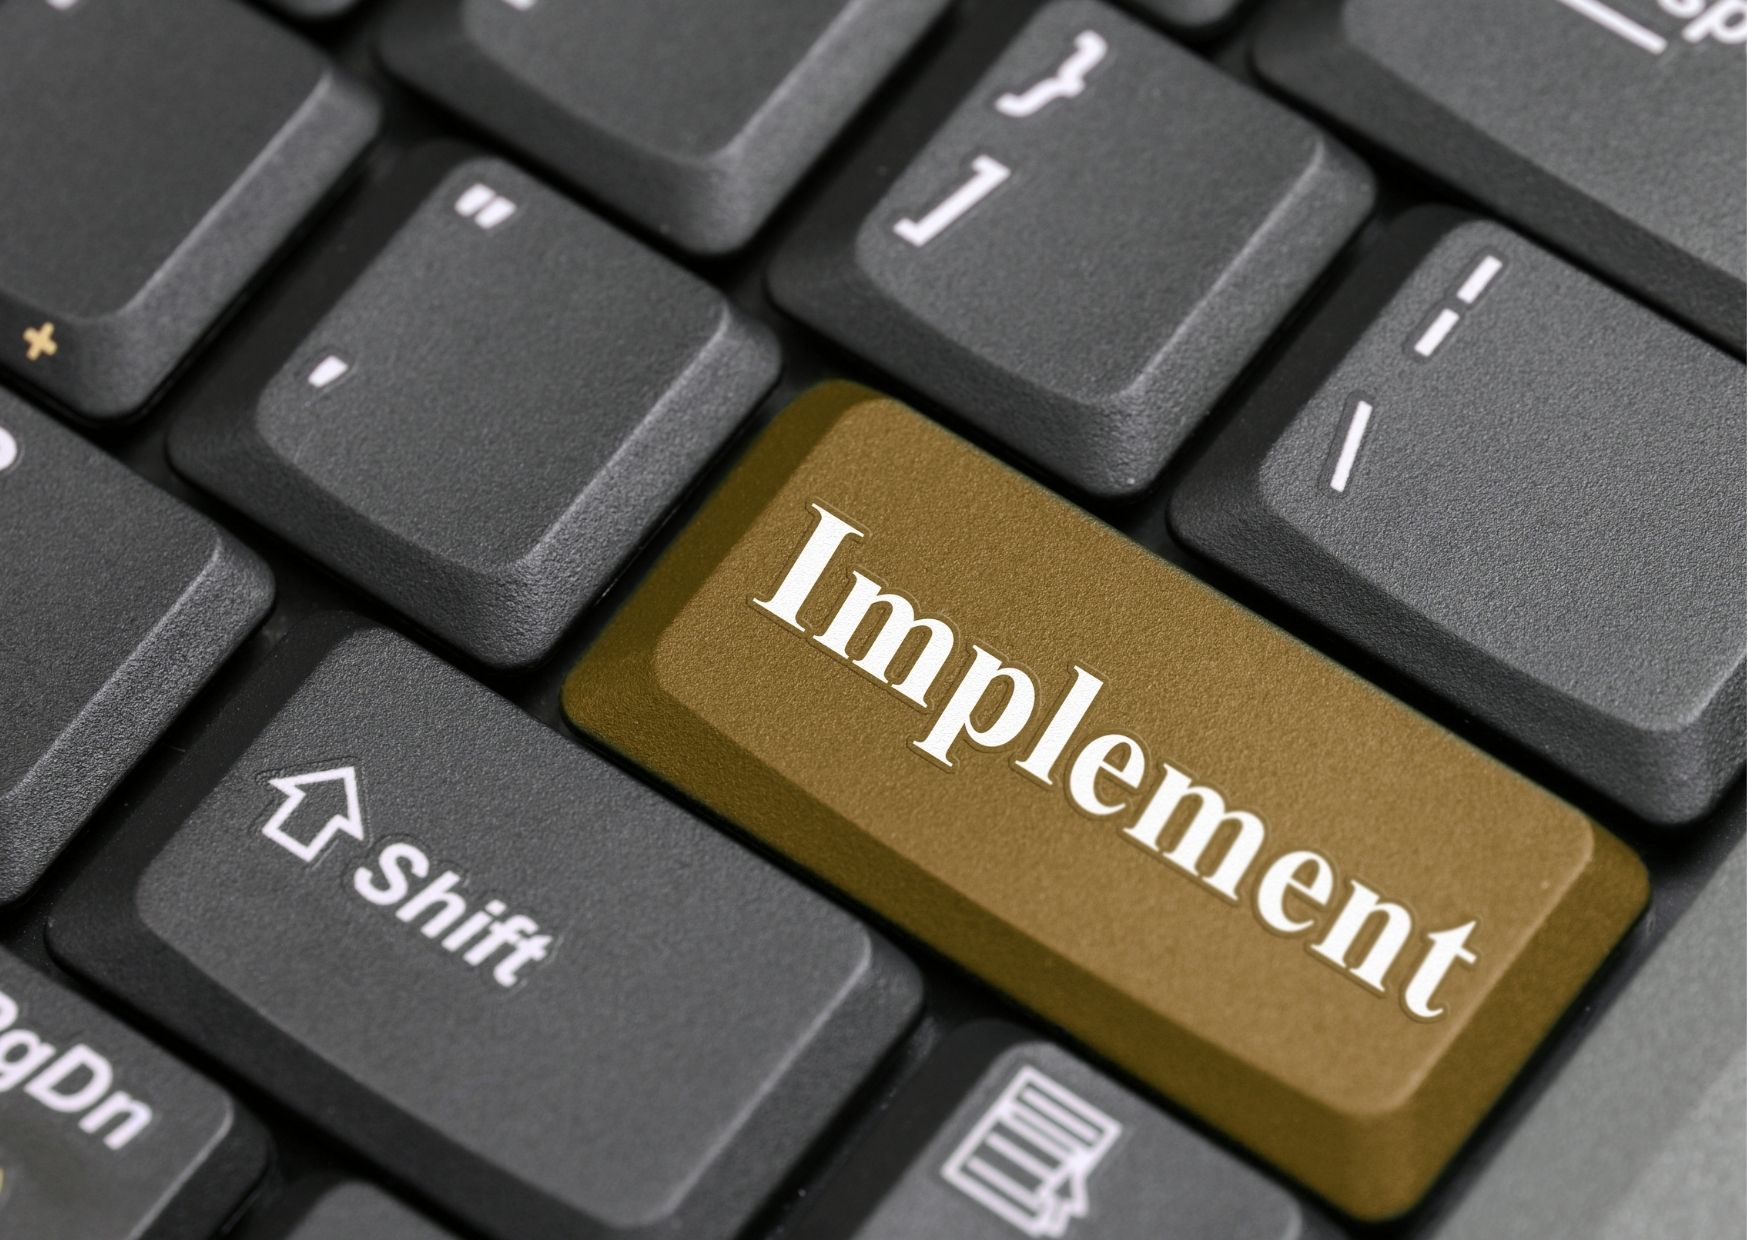 SAP Implementation